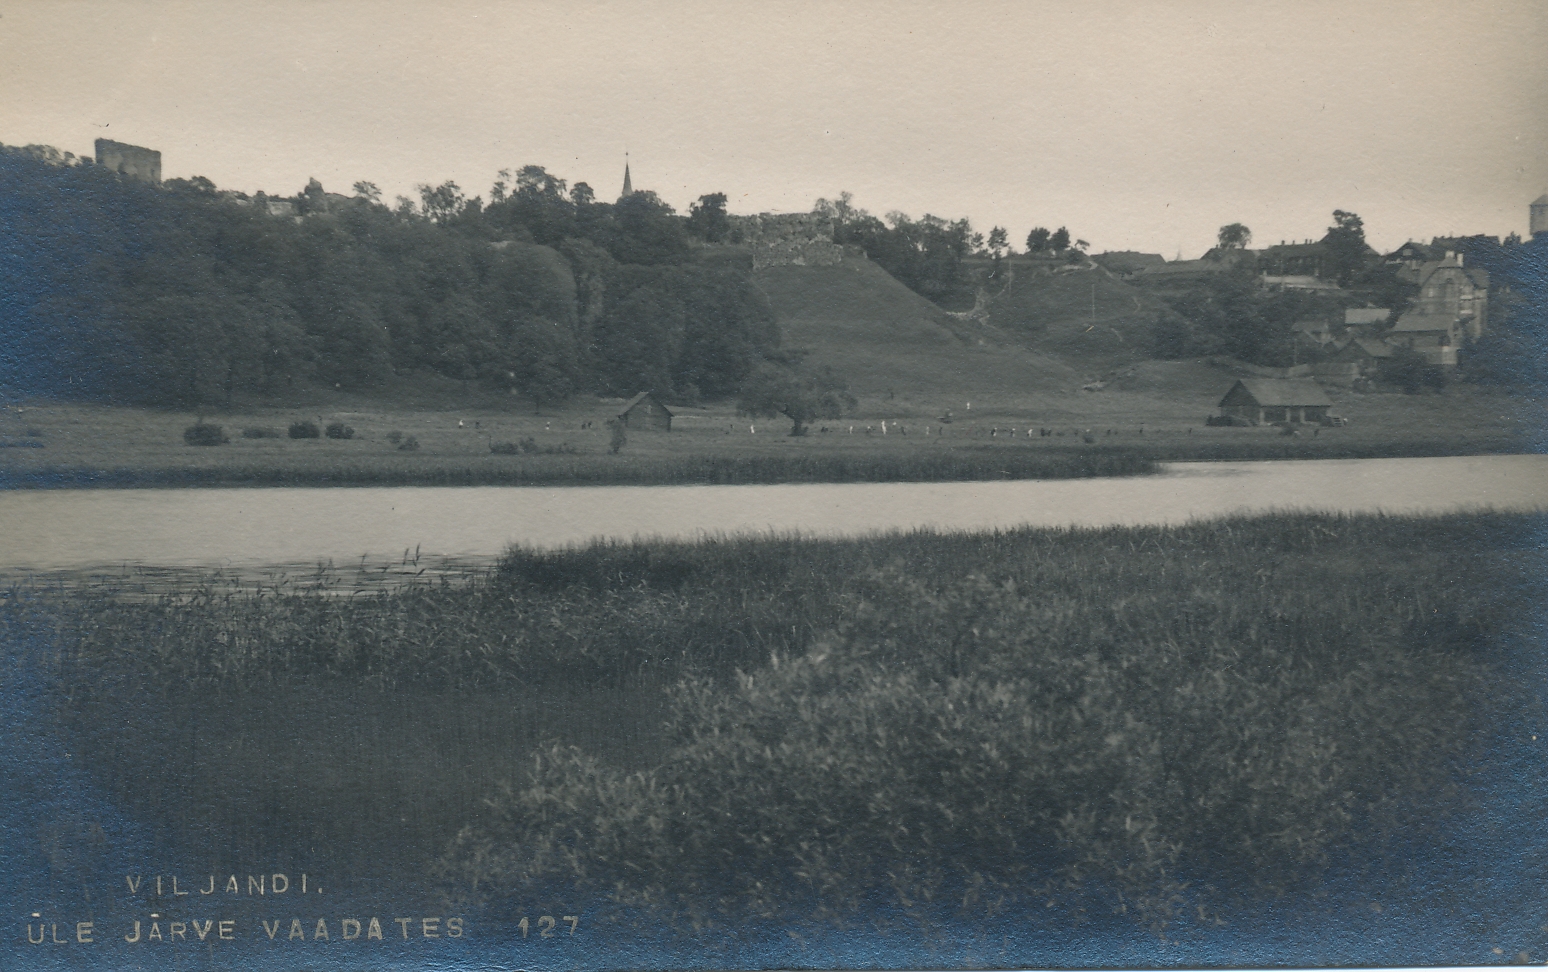 foto, Viljandi, lossimäed järve vastaskaldalt, u 1915